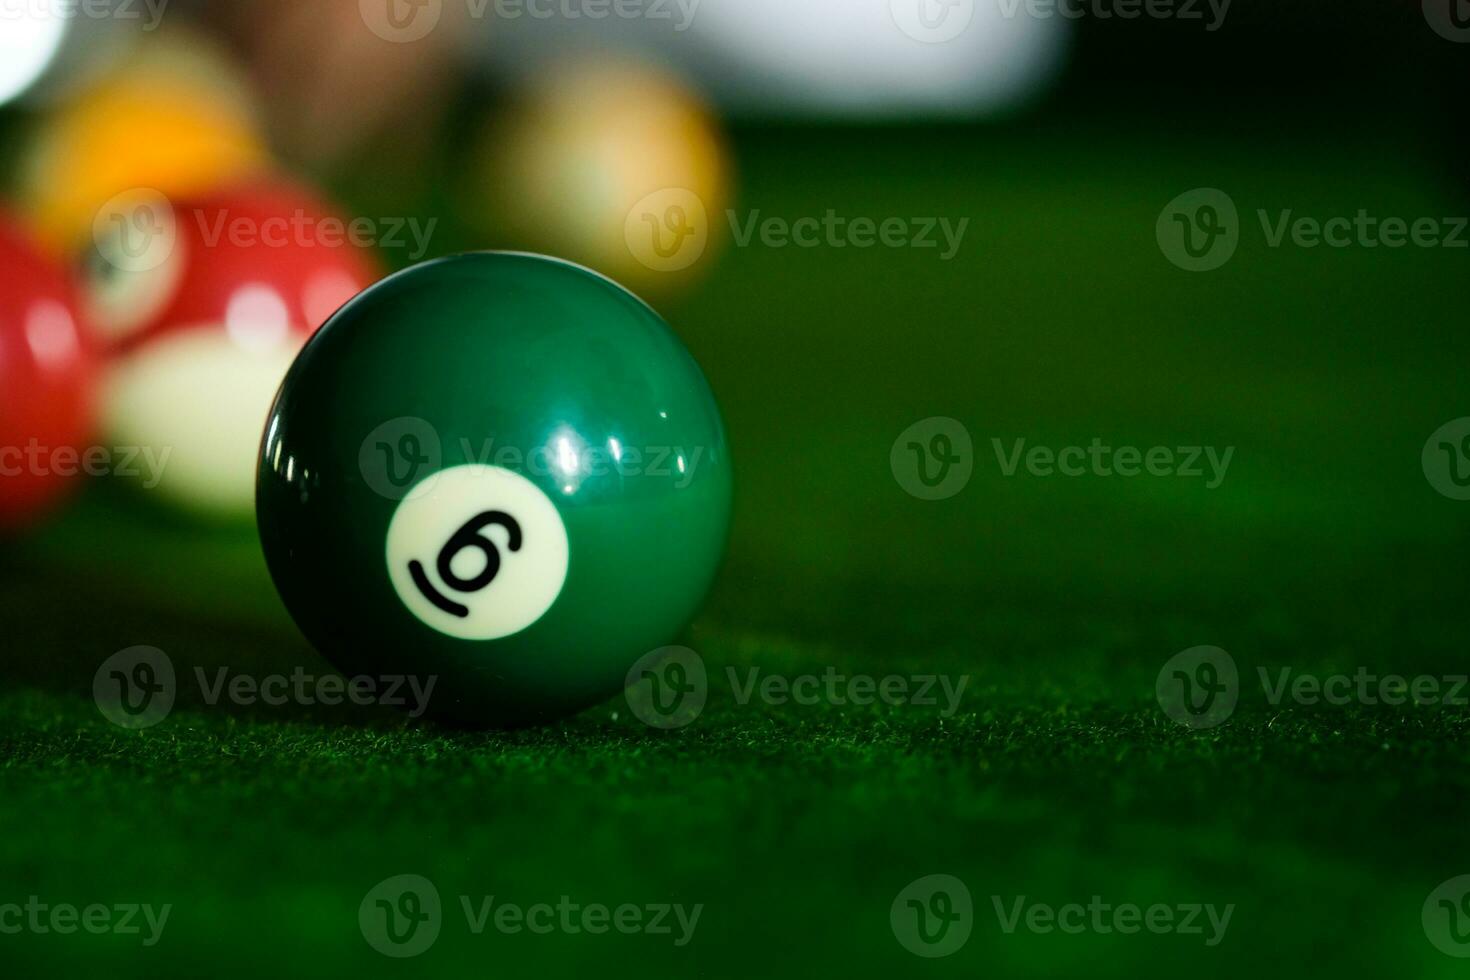 mannens hand och kö ärm spelar snooker spel eller framställning siktar till skjuta slå samman bollar på en grön biljard tabell. färgrik snooker bollar på grön fris. foto